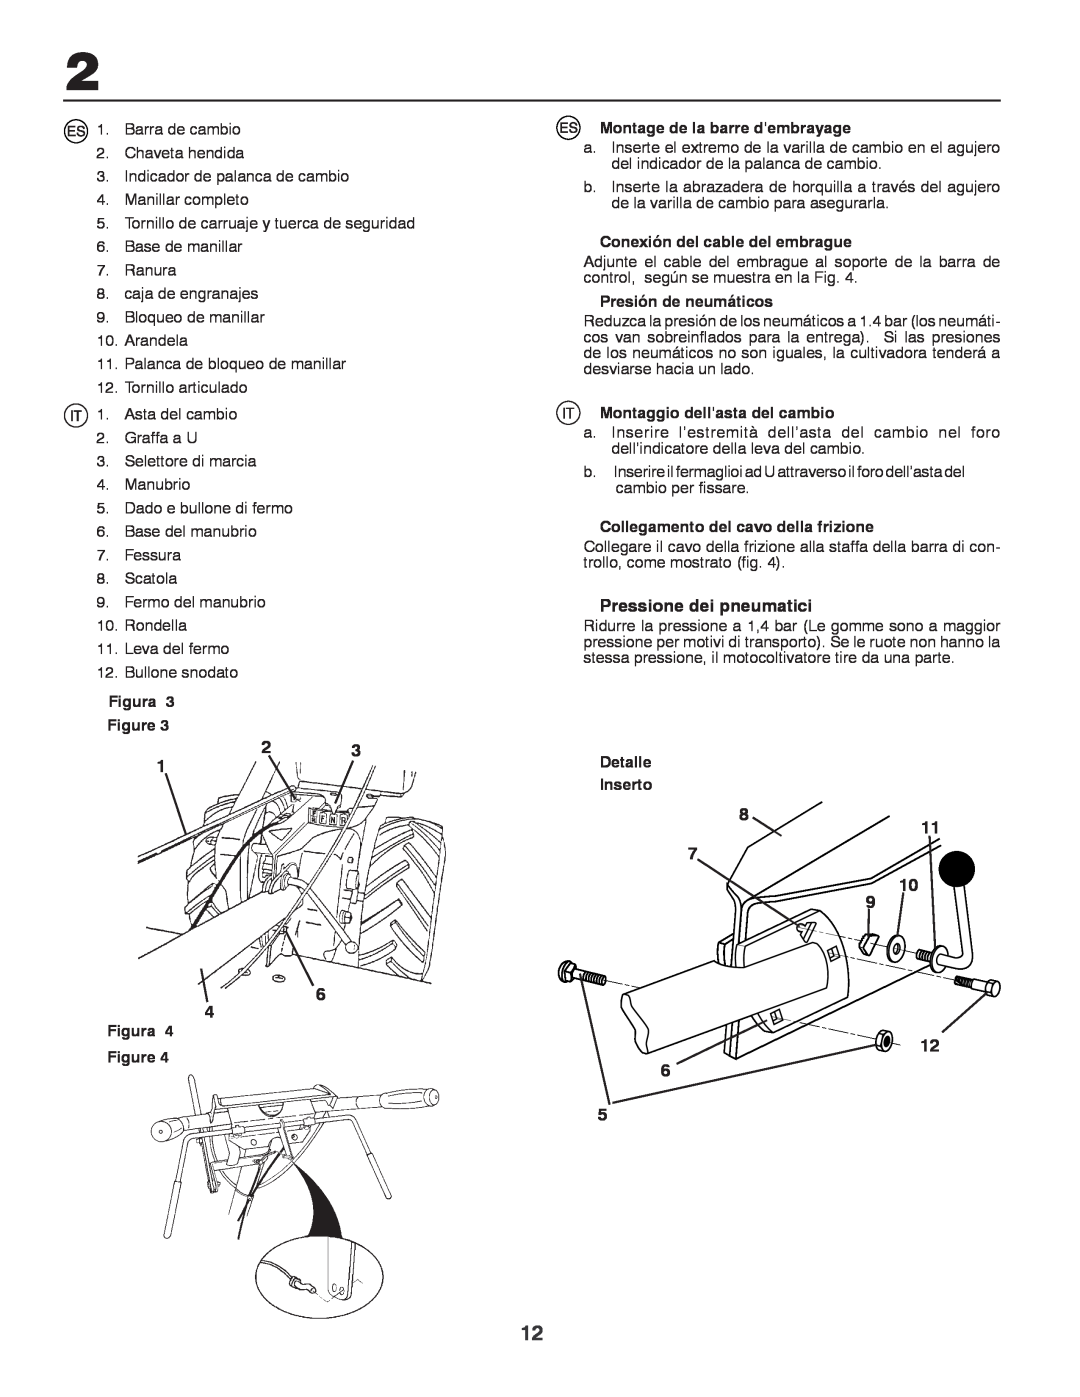 Husqvarna CRT81 Pressione dei pneumatici, Figura, Montage de la barre dembrayage, Conexión del cable del embrague 